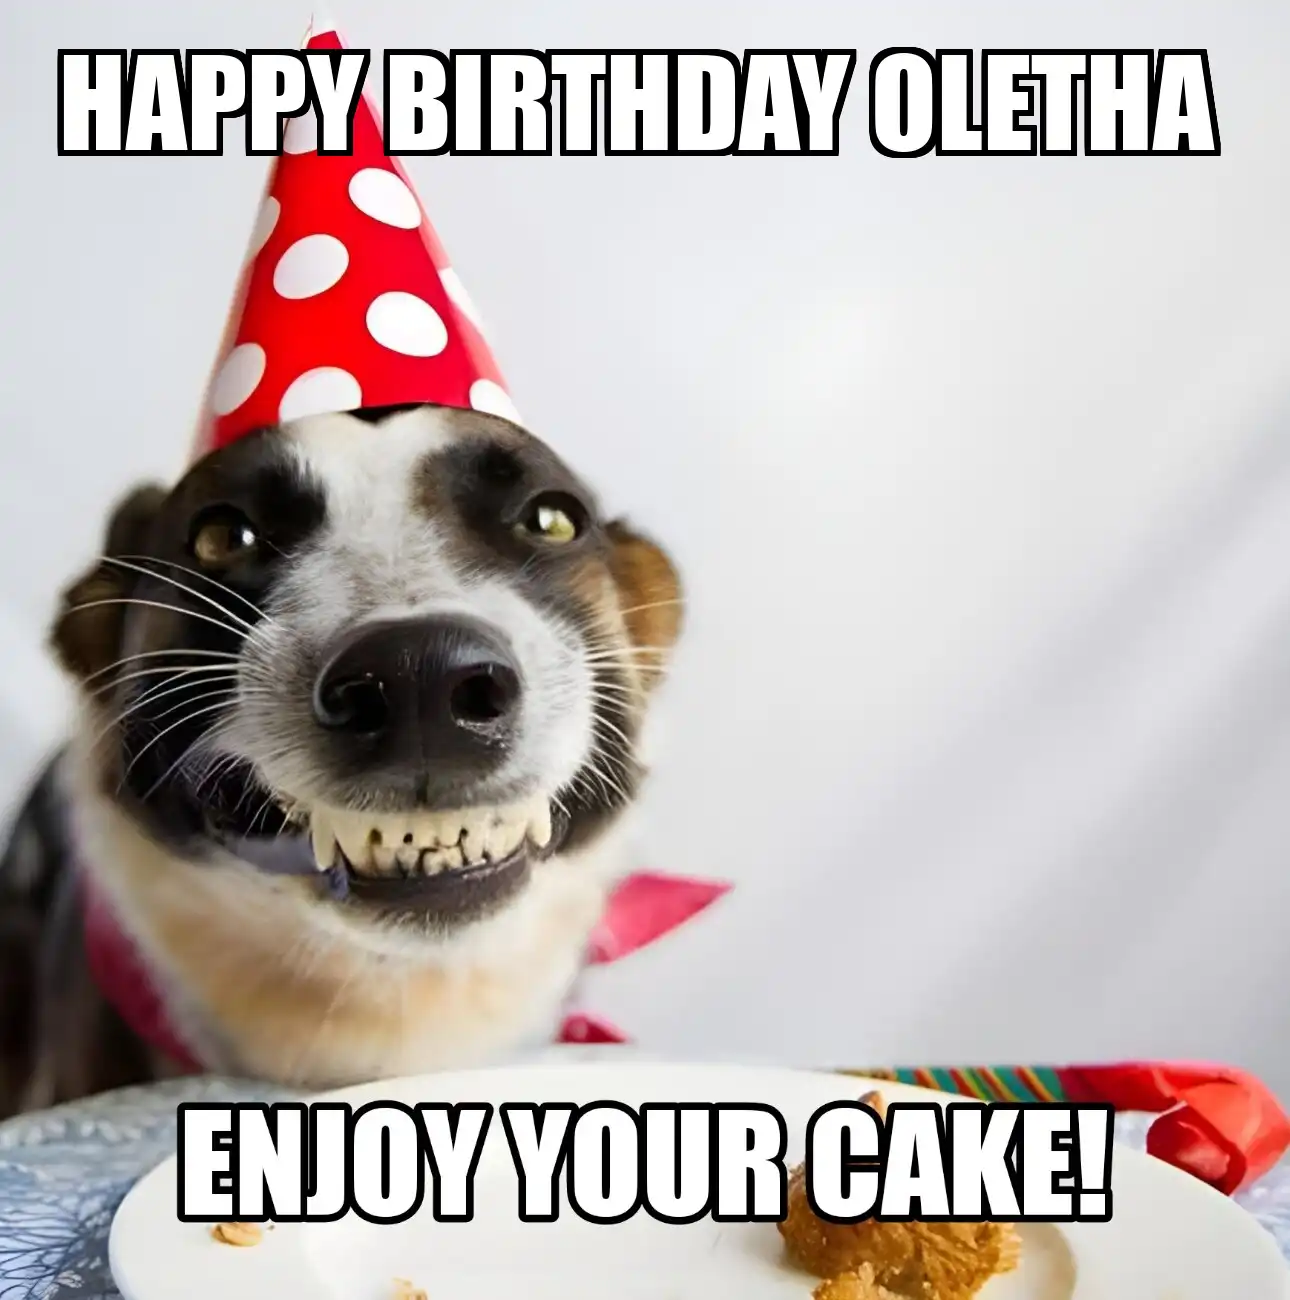 Happy Birthday Oletha Enjoy Your Cake Dog Meme